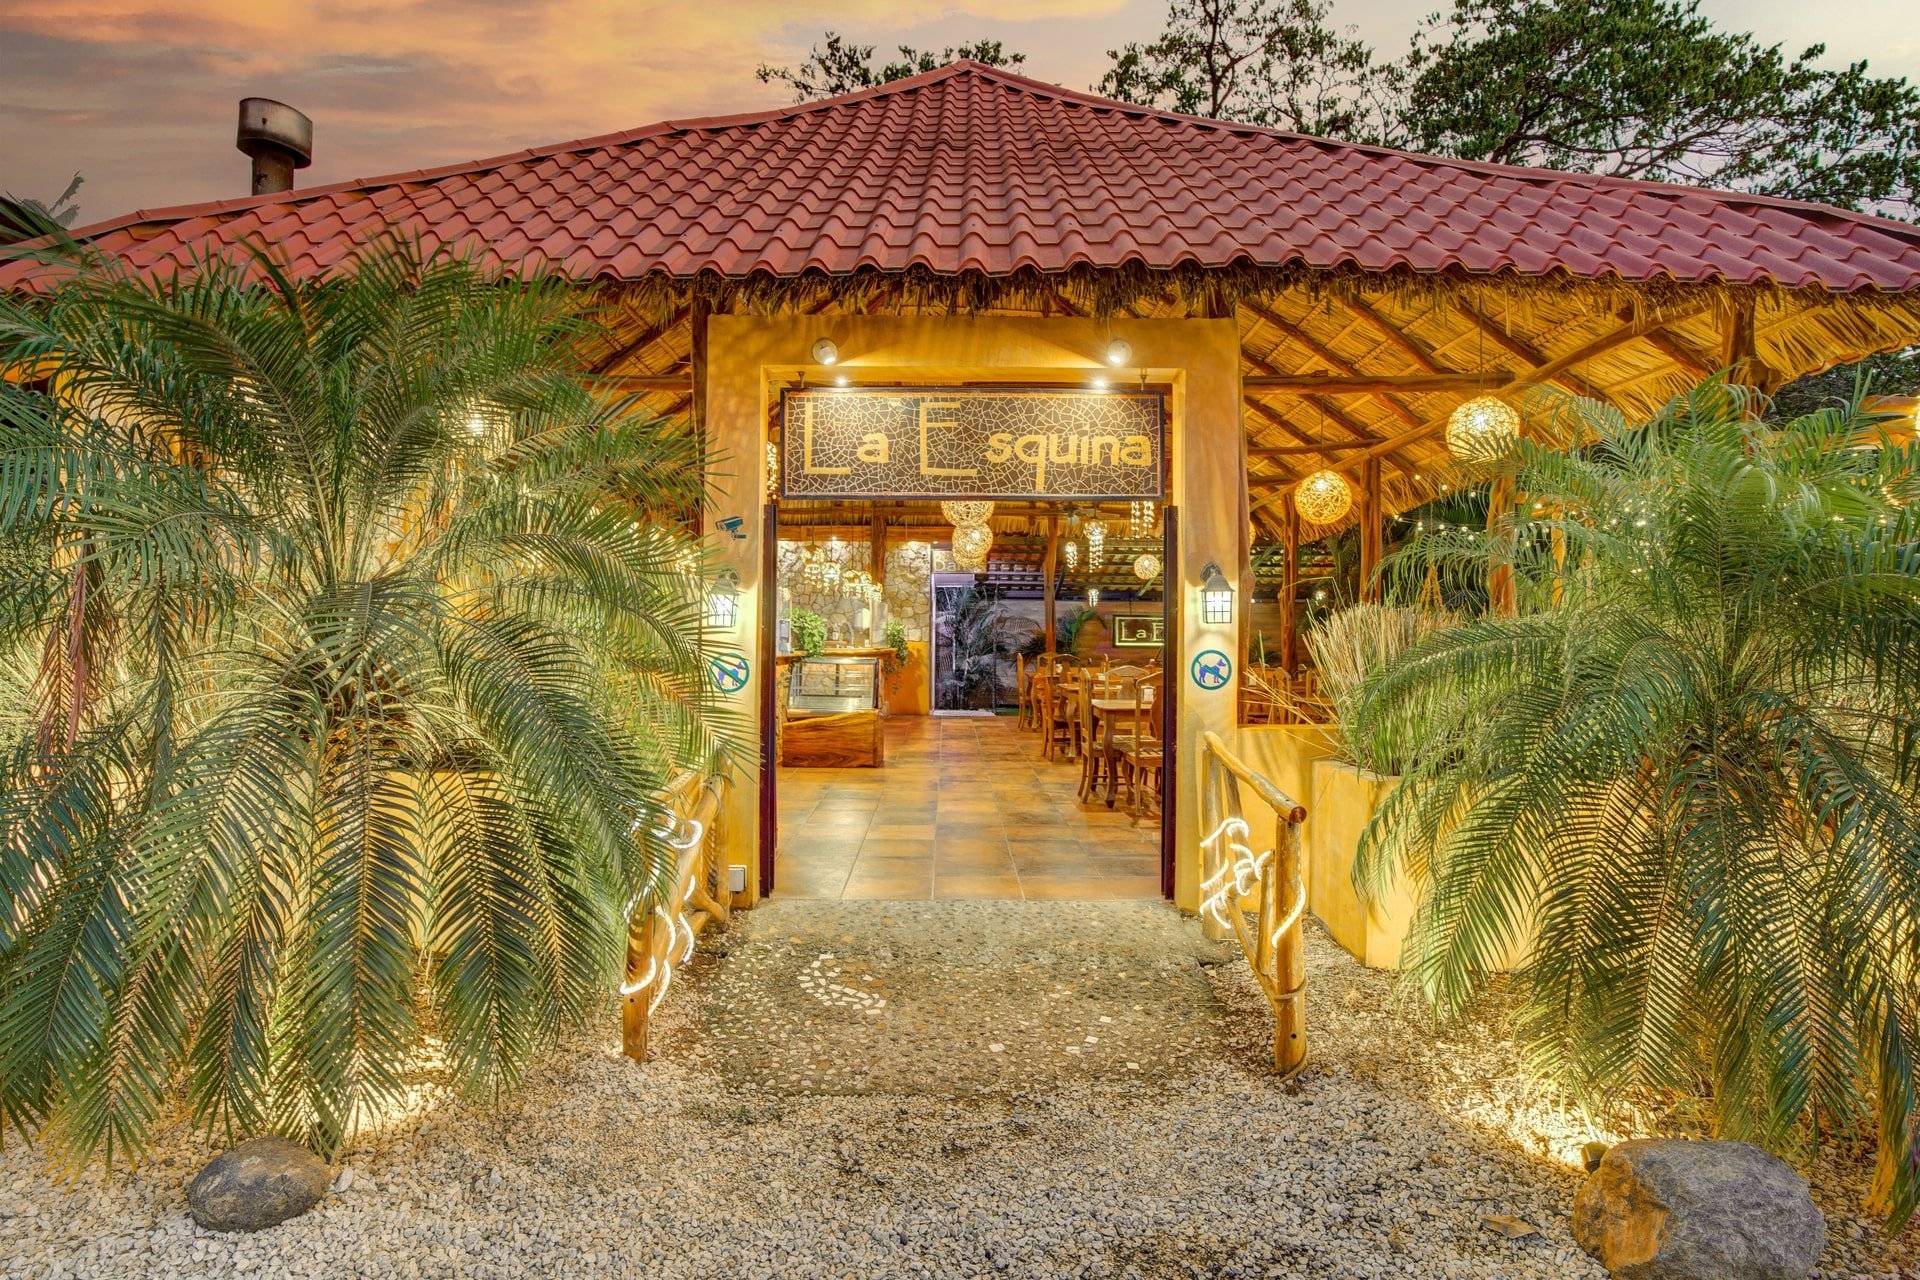 La Esquina restaurant for sale in Costa Rica